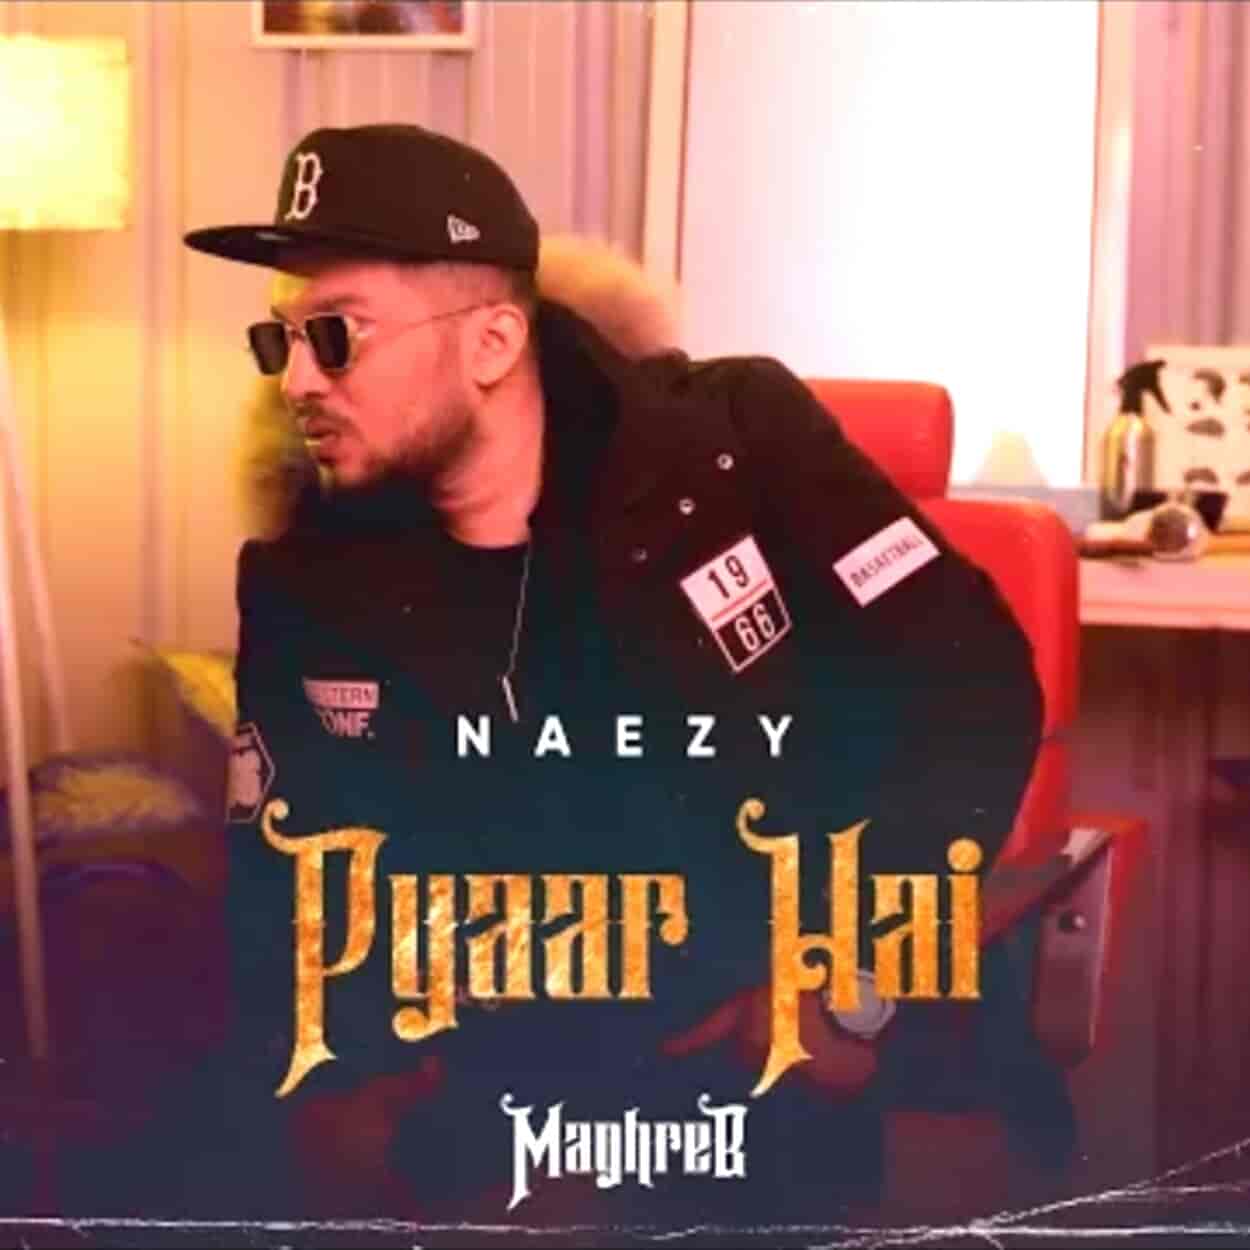 Pyaar Hai Lyrics Naezy 1